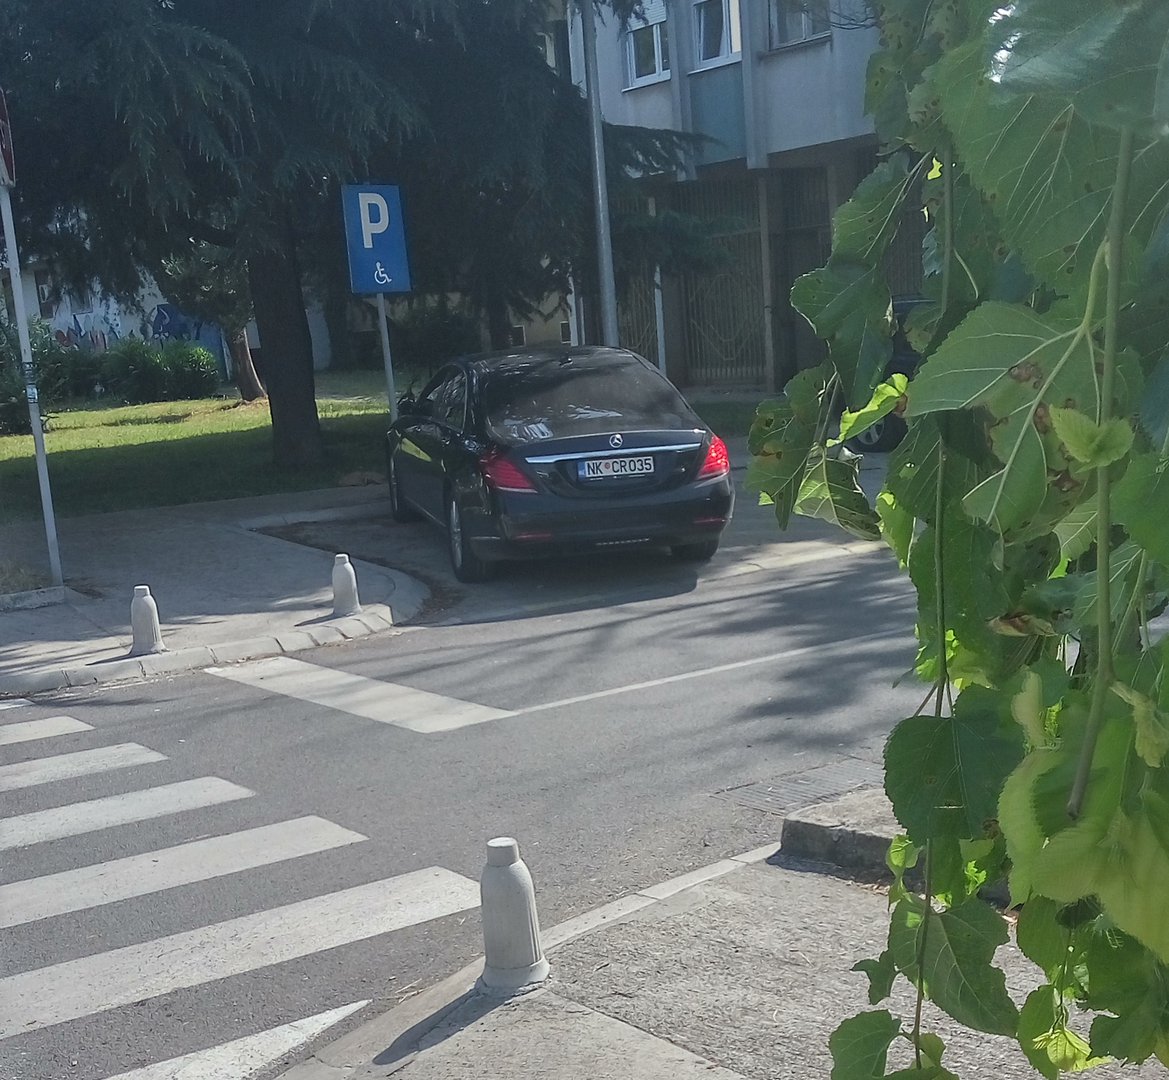 Ulica Svetozara Markovića u Podgorici, parking mjesto namijenjeno osobama sa hendikepom